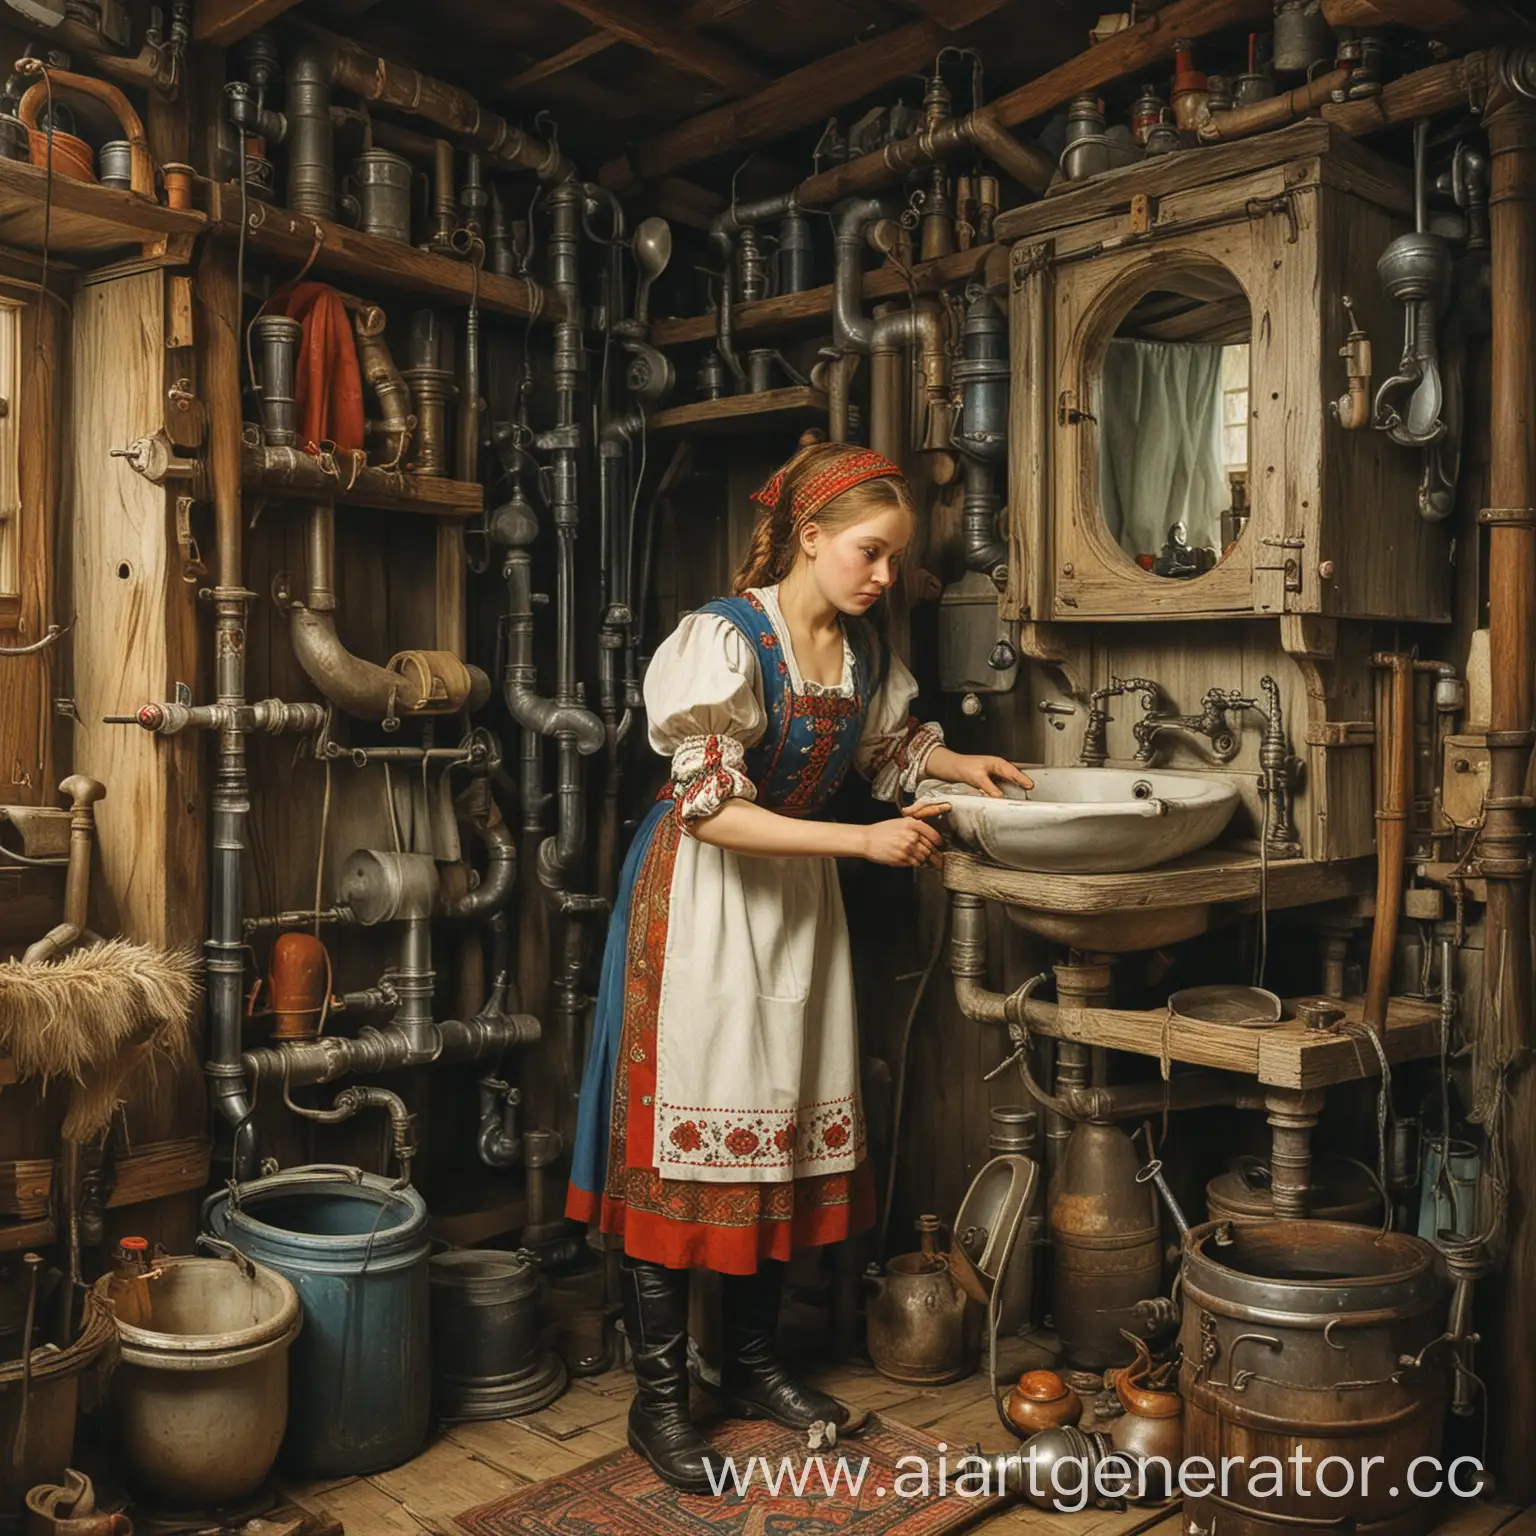 Enchanting-Plumbing-Scenes-in-Russian-Folk-Tales